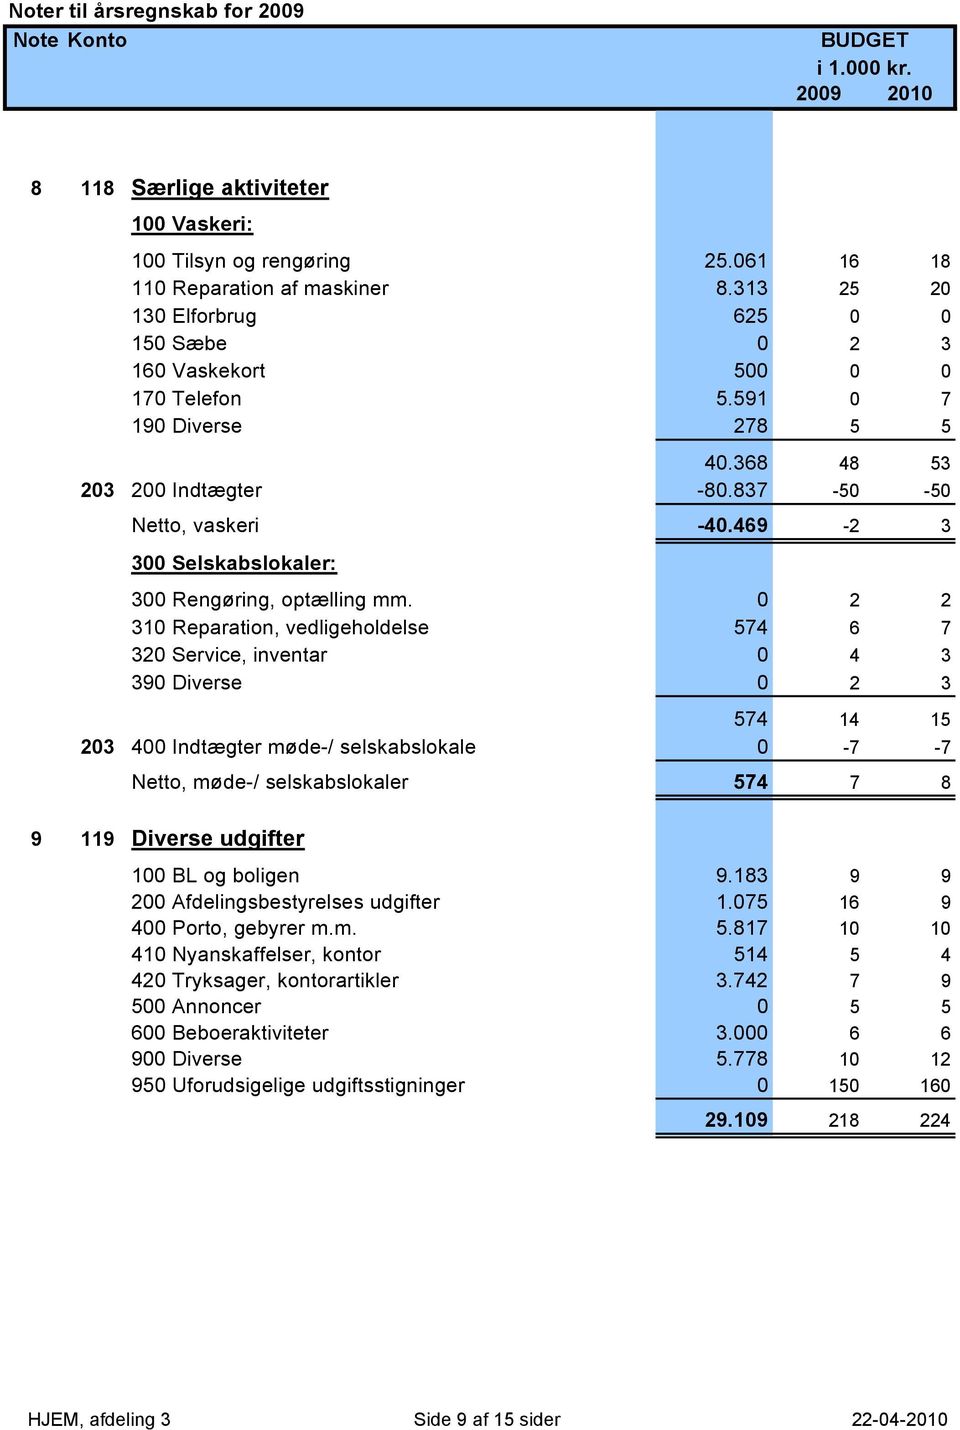 469-2 3 300 Selskabslokaler: 300 Rengøring, optælling mm.